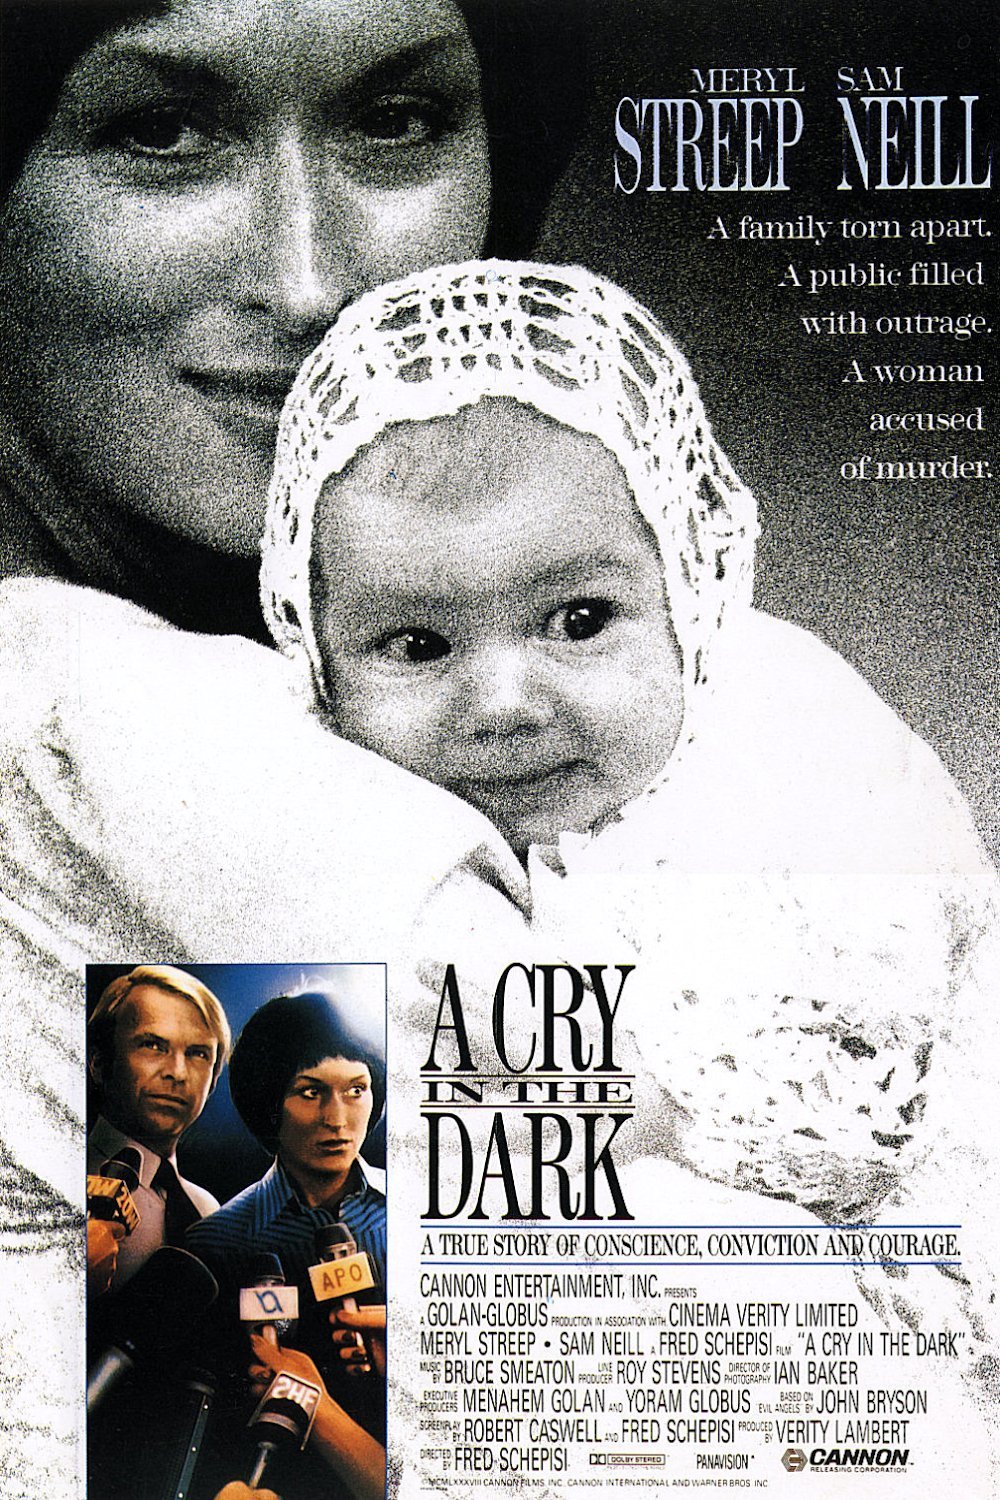 Nonton film A Cry in the Dark layarkaca21 indoxx1 ganool online streaming terbaru